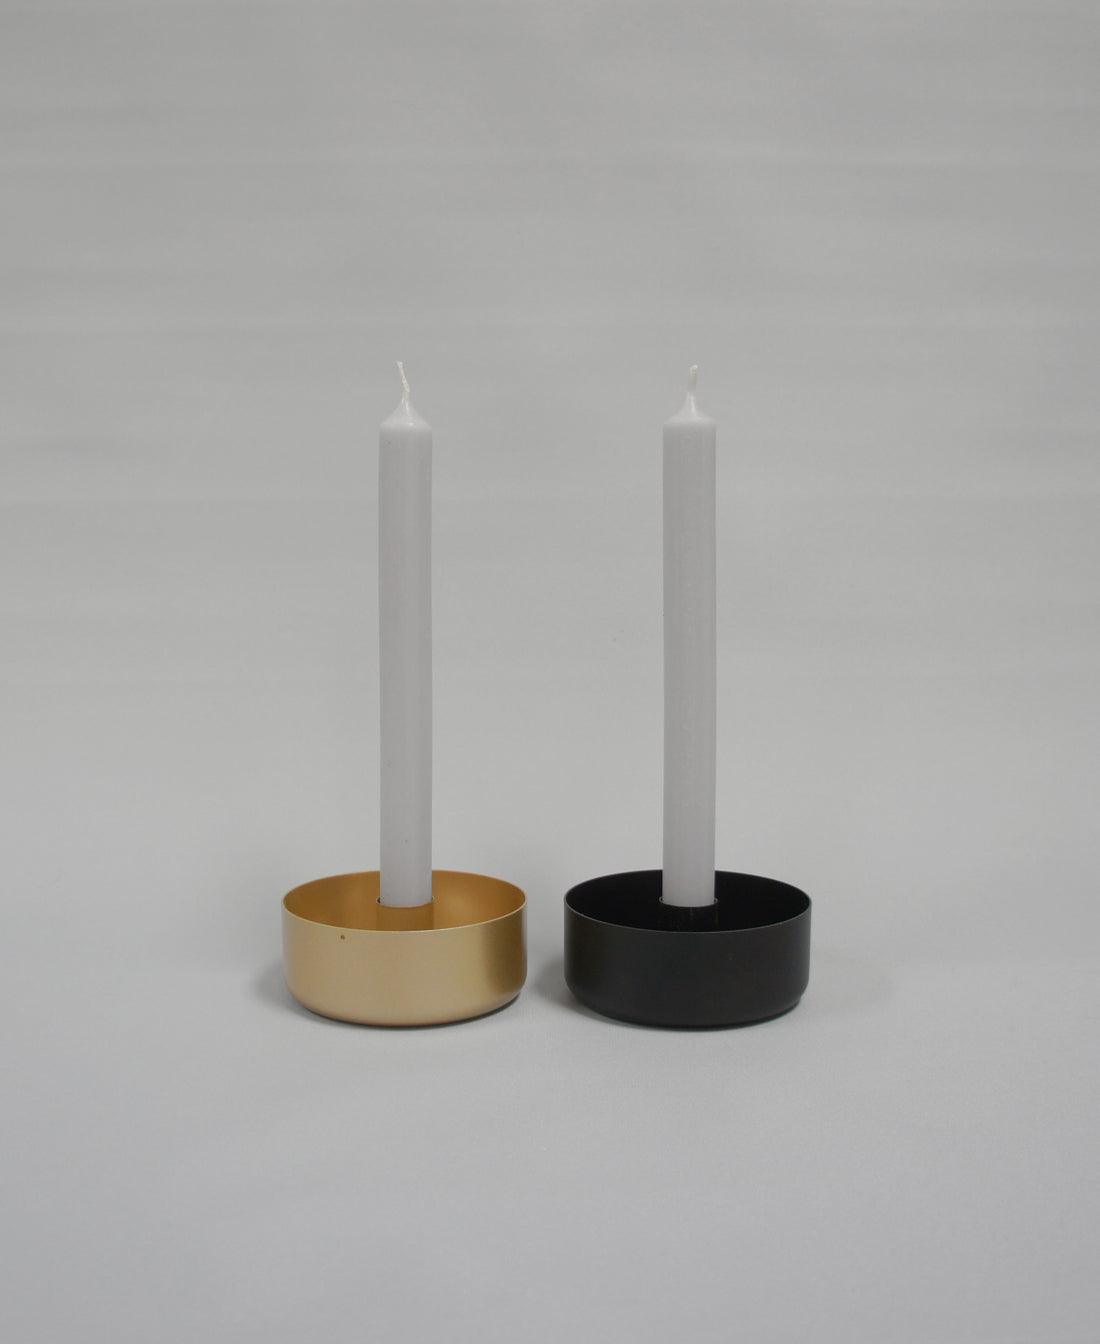 Kerzenschale, Metall in 2 Farben: Gold und Schwarz